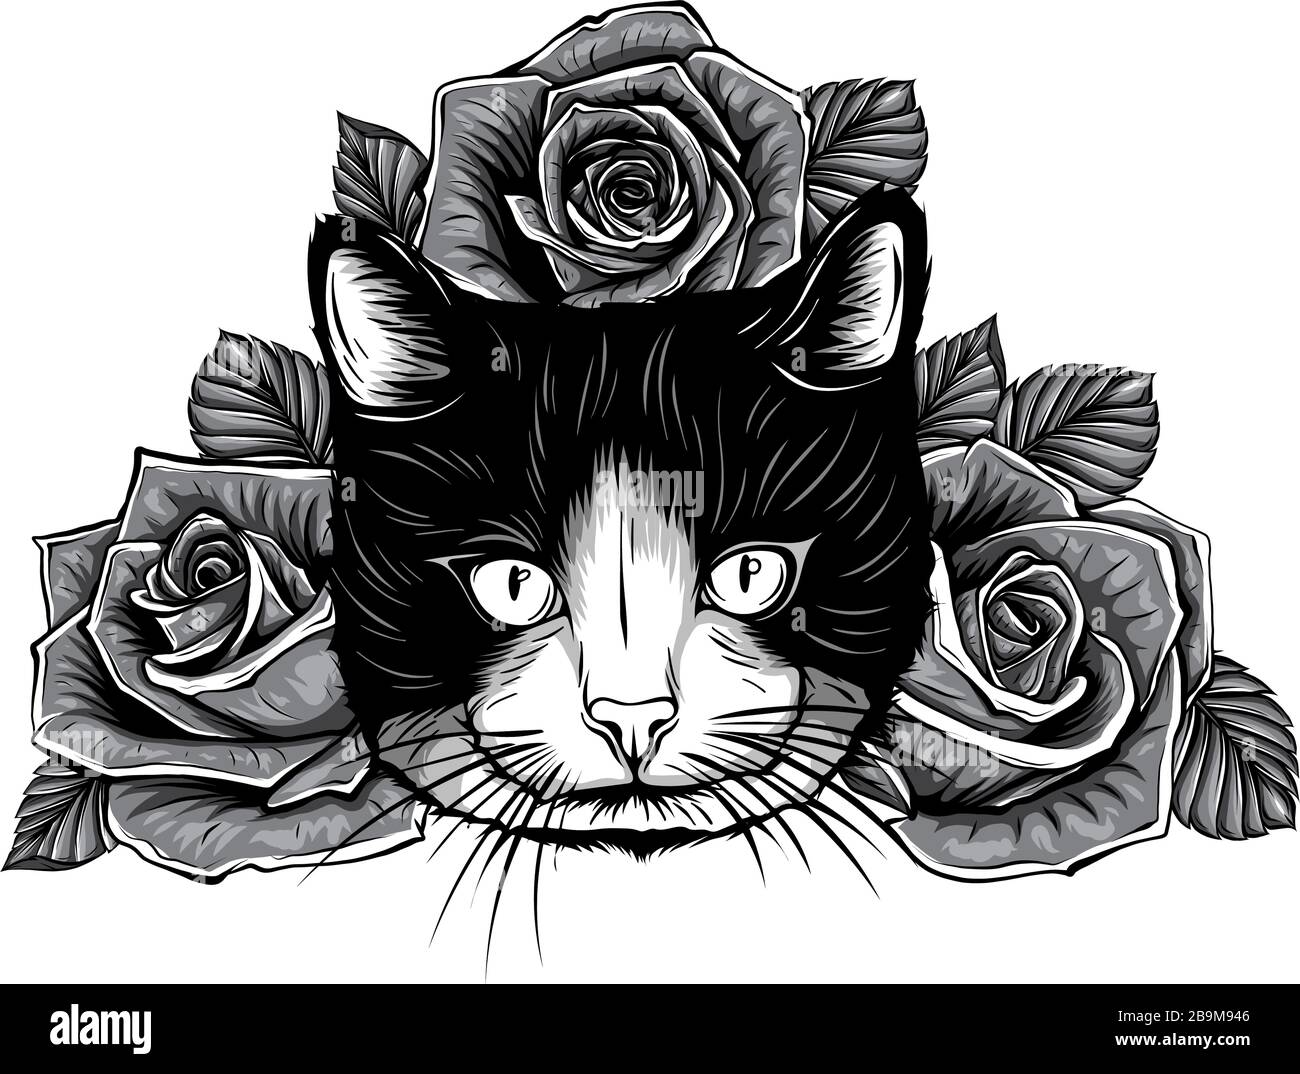 Monochromatischer Zeichentrickfilm flauschige Katze mit Rosen. Siamkatze mit offenen Augen und Blumen. Malbuch für Erwachsene und Kinder. Stock Vektor